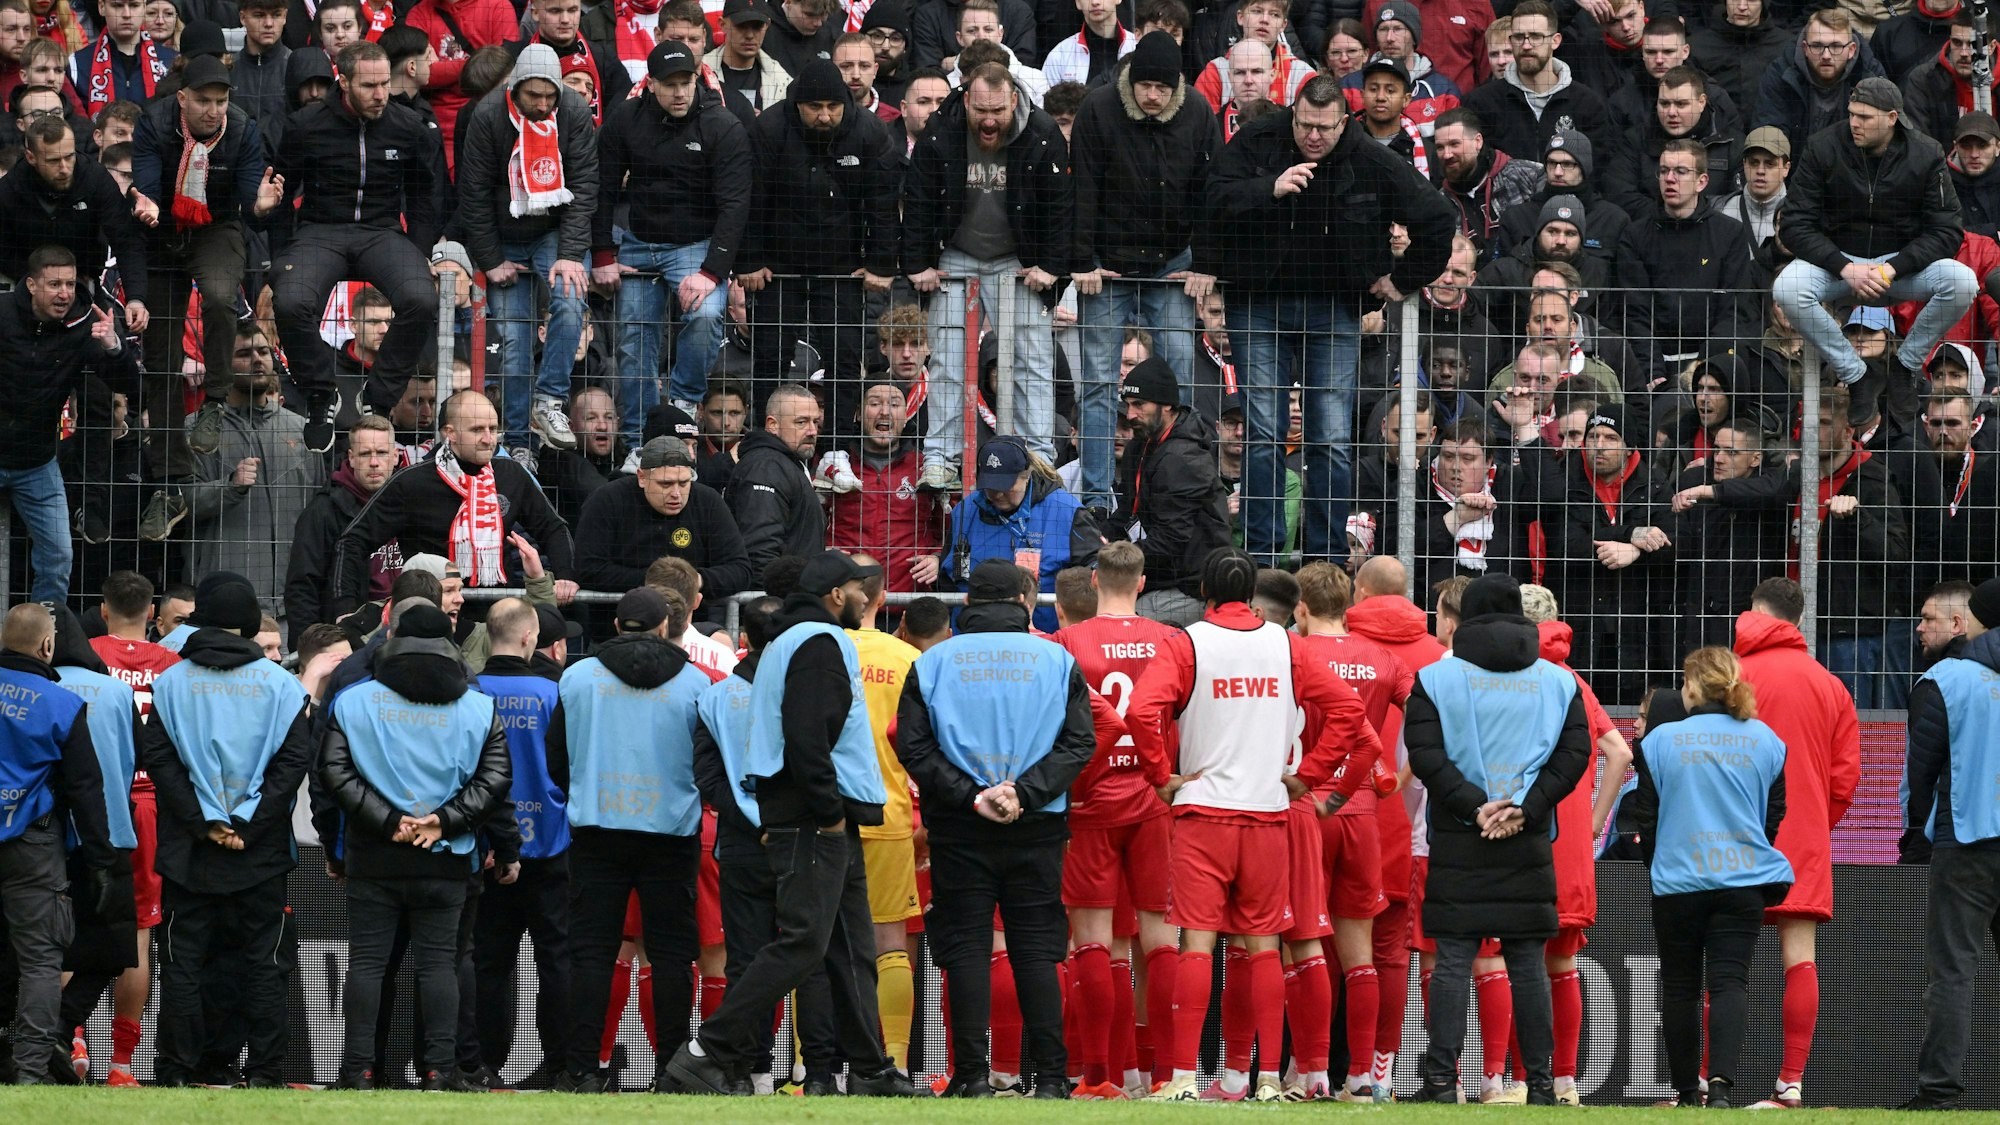 Antreten zum Rapport: Die Mannschaft des 1. FC Köln reiht sich nach dem Debakel gegen Darmstadt vor der Südkurve auf.